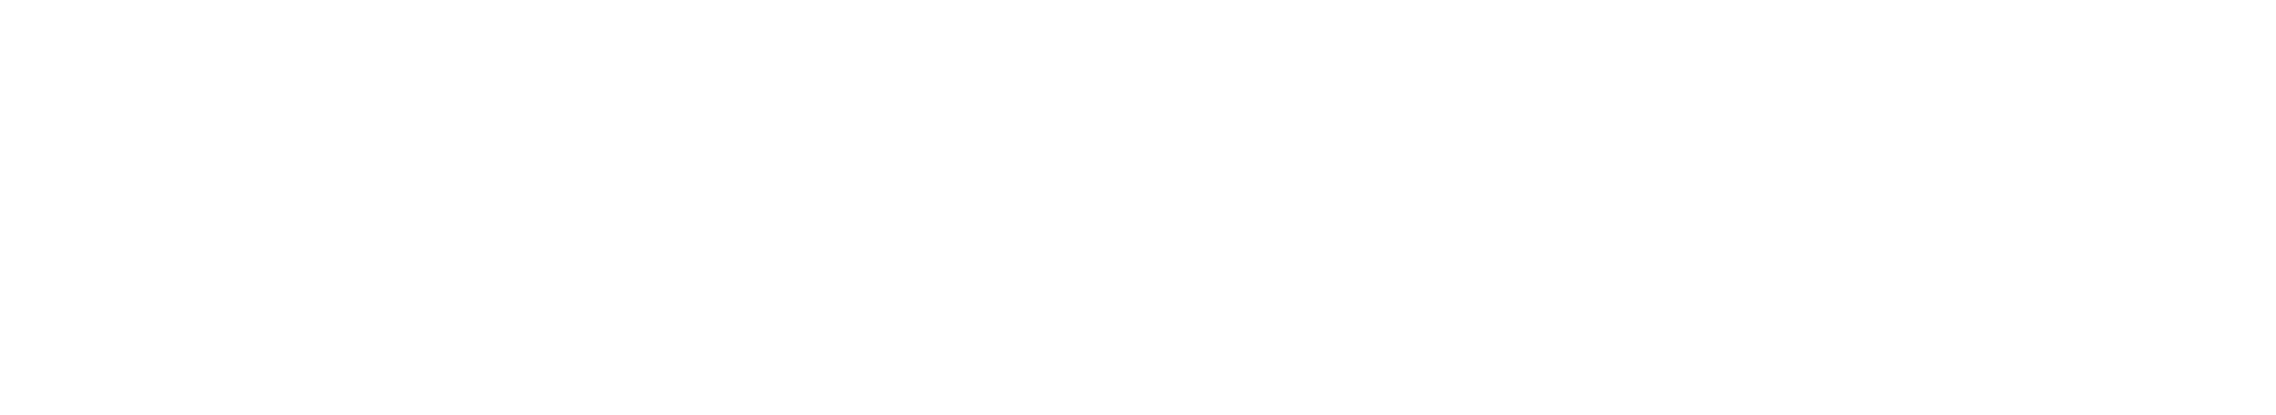 timeline of innovation